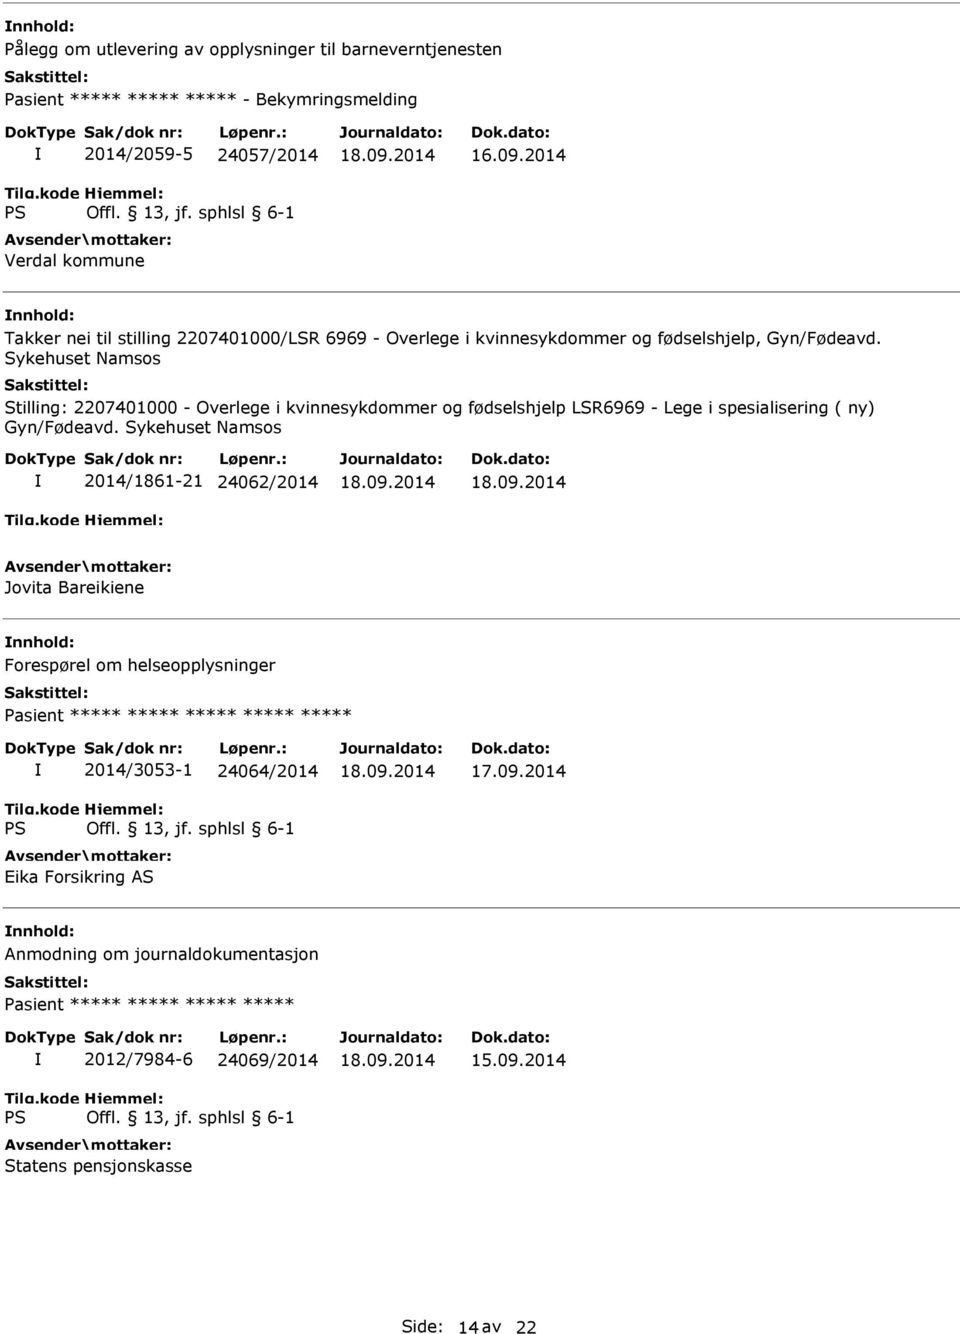 Sykehuset Namsos Stilling: 2207401000 - Overlege i kvinnesykdommer og fødselshjelp LSR6969 - Lege i spesialisering ( ny) Gyn/Fødeavd.